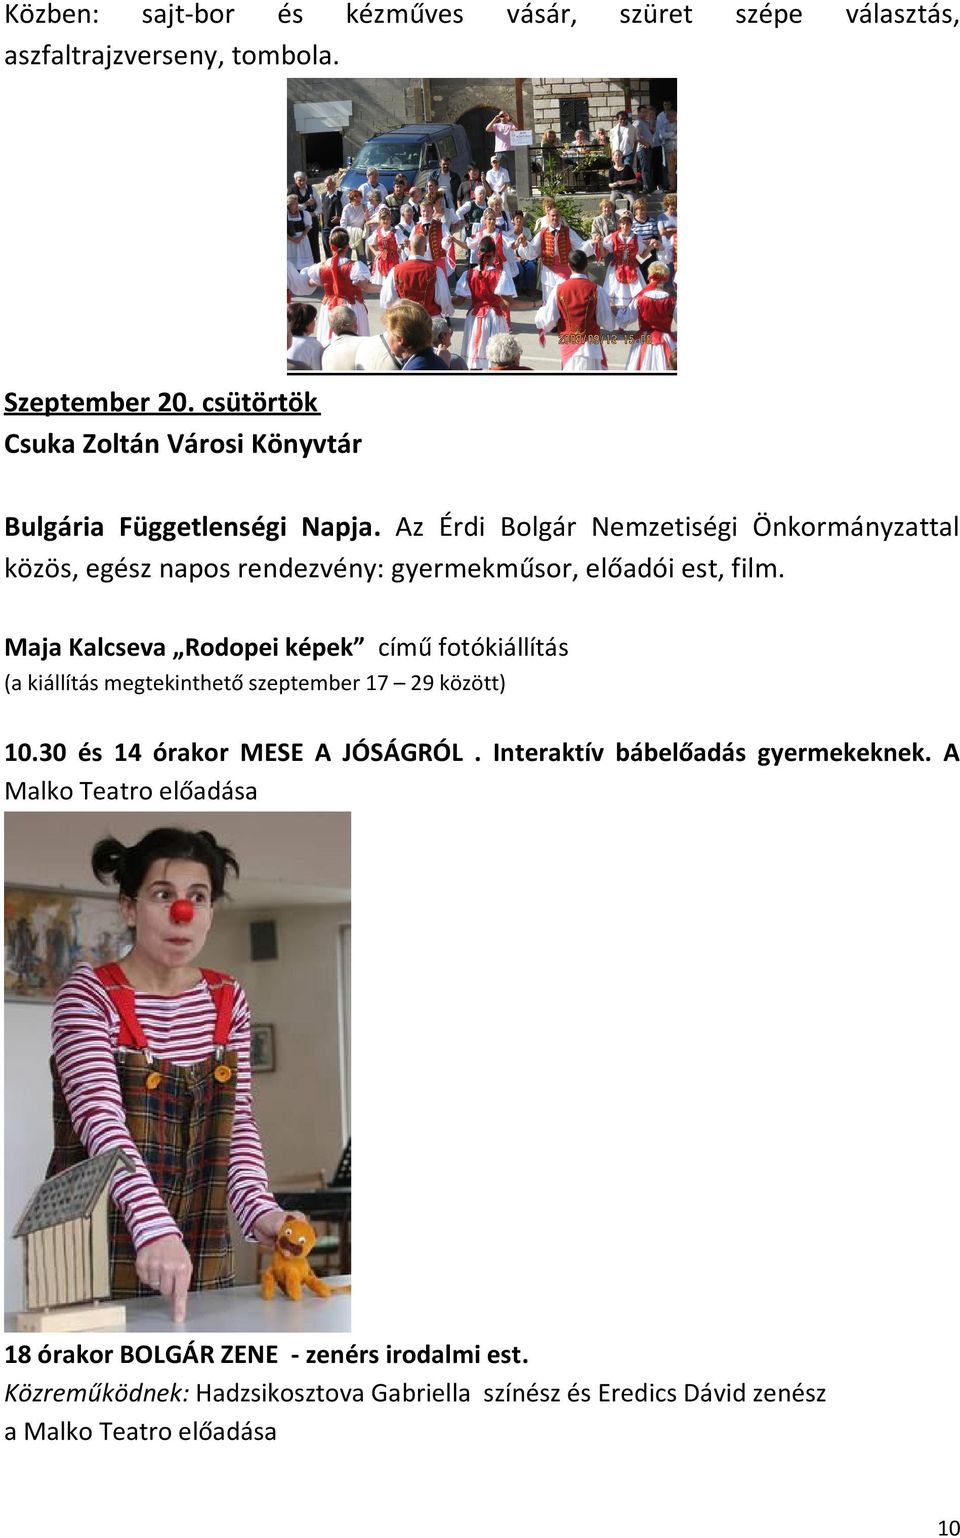 Az Érdi Bolgár Nemzetiségi Önkormányzattal közös, egész napos rendezvény: gyermekműsor, előadói est, film.